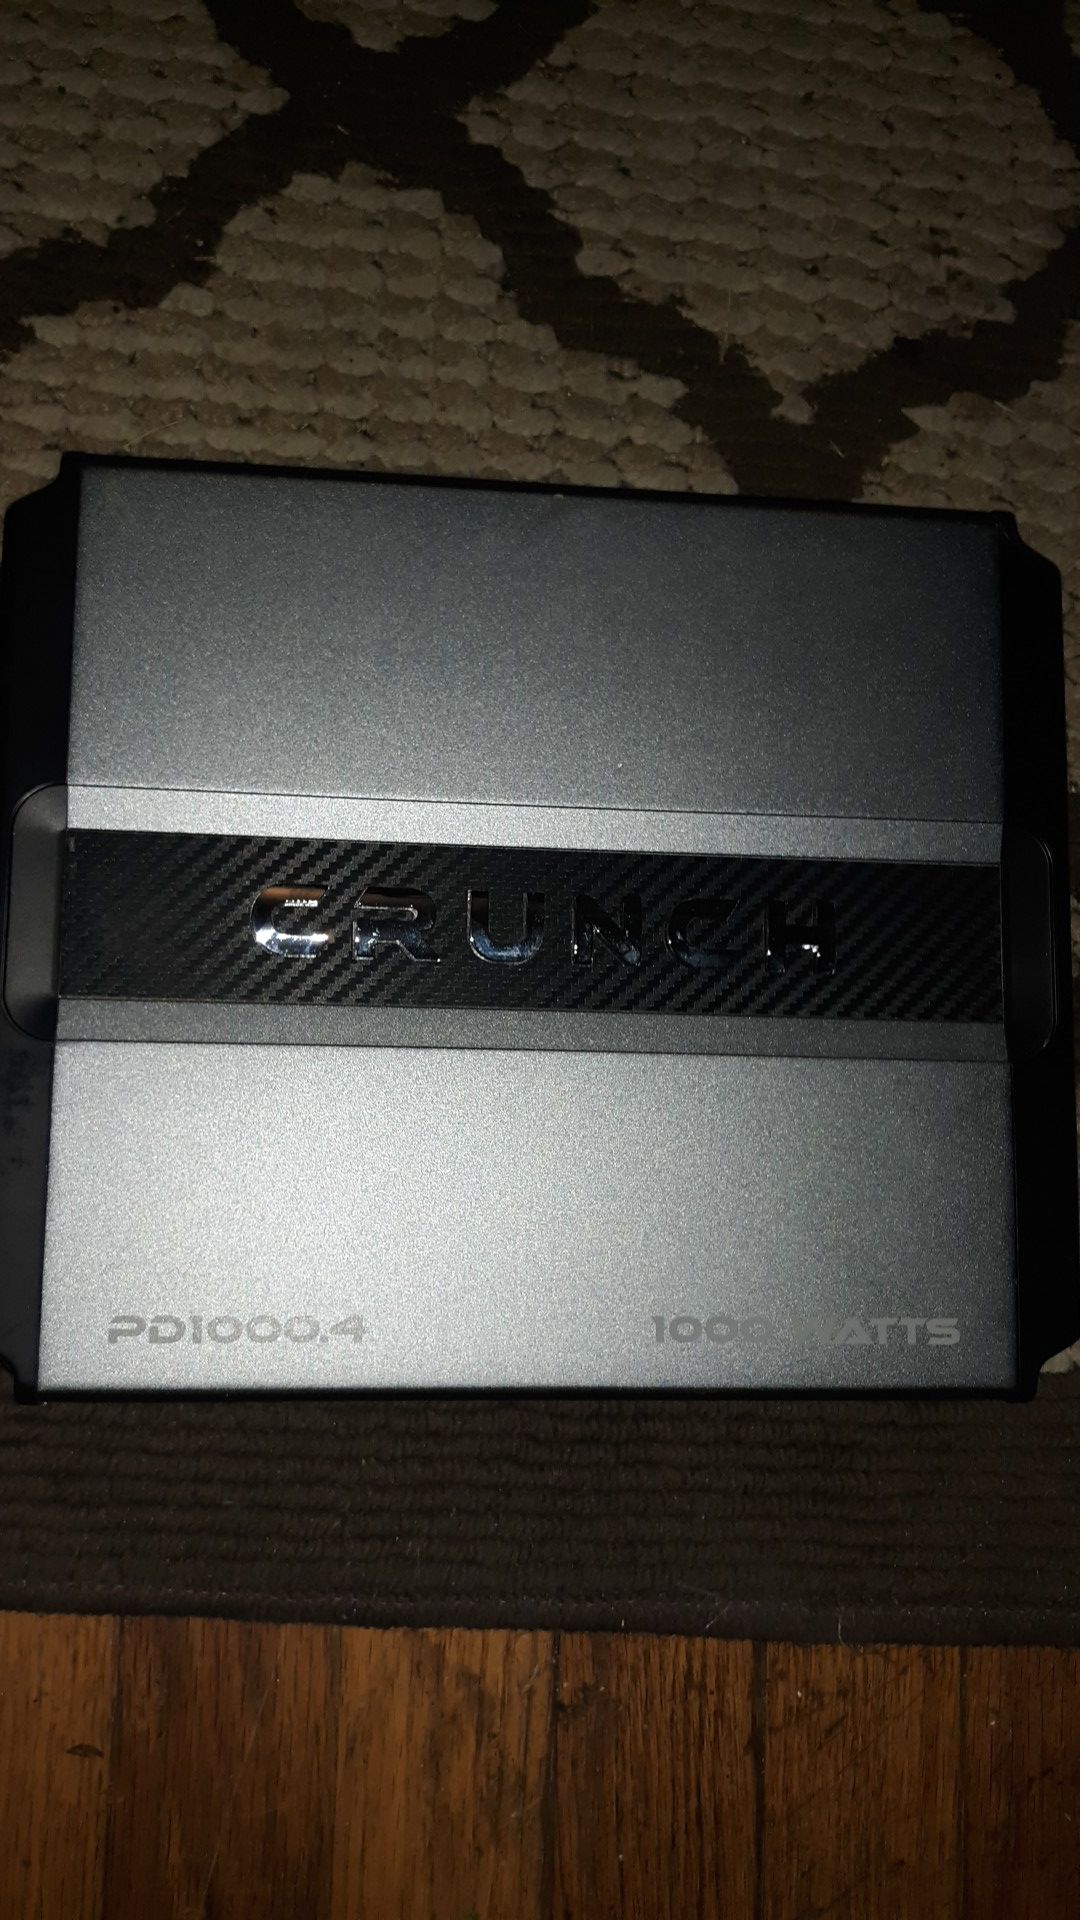 CRUNCH PD1000.4 1000 WATT Amplifier